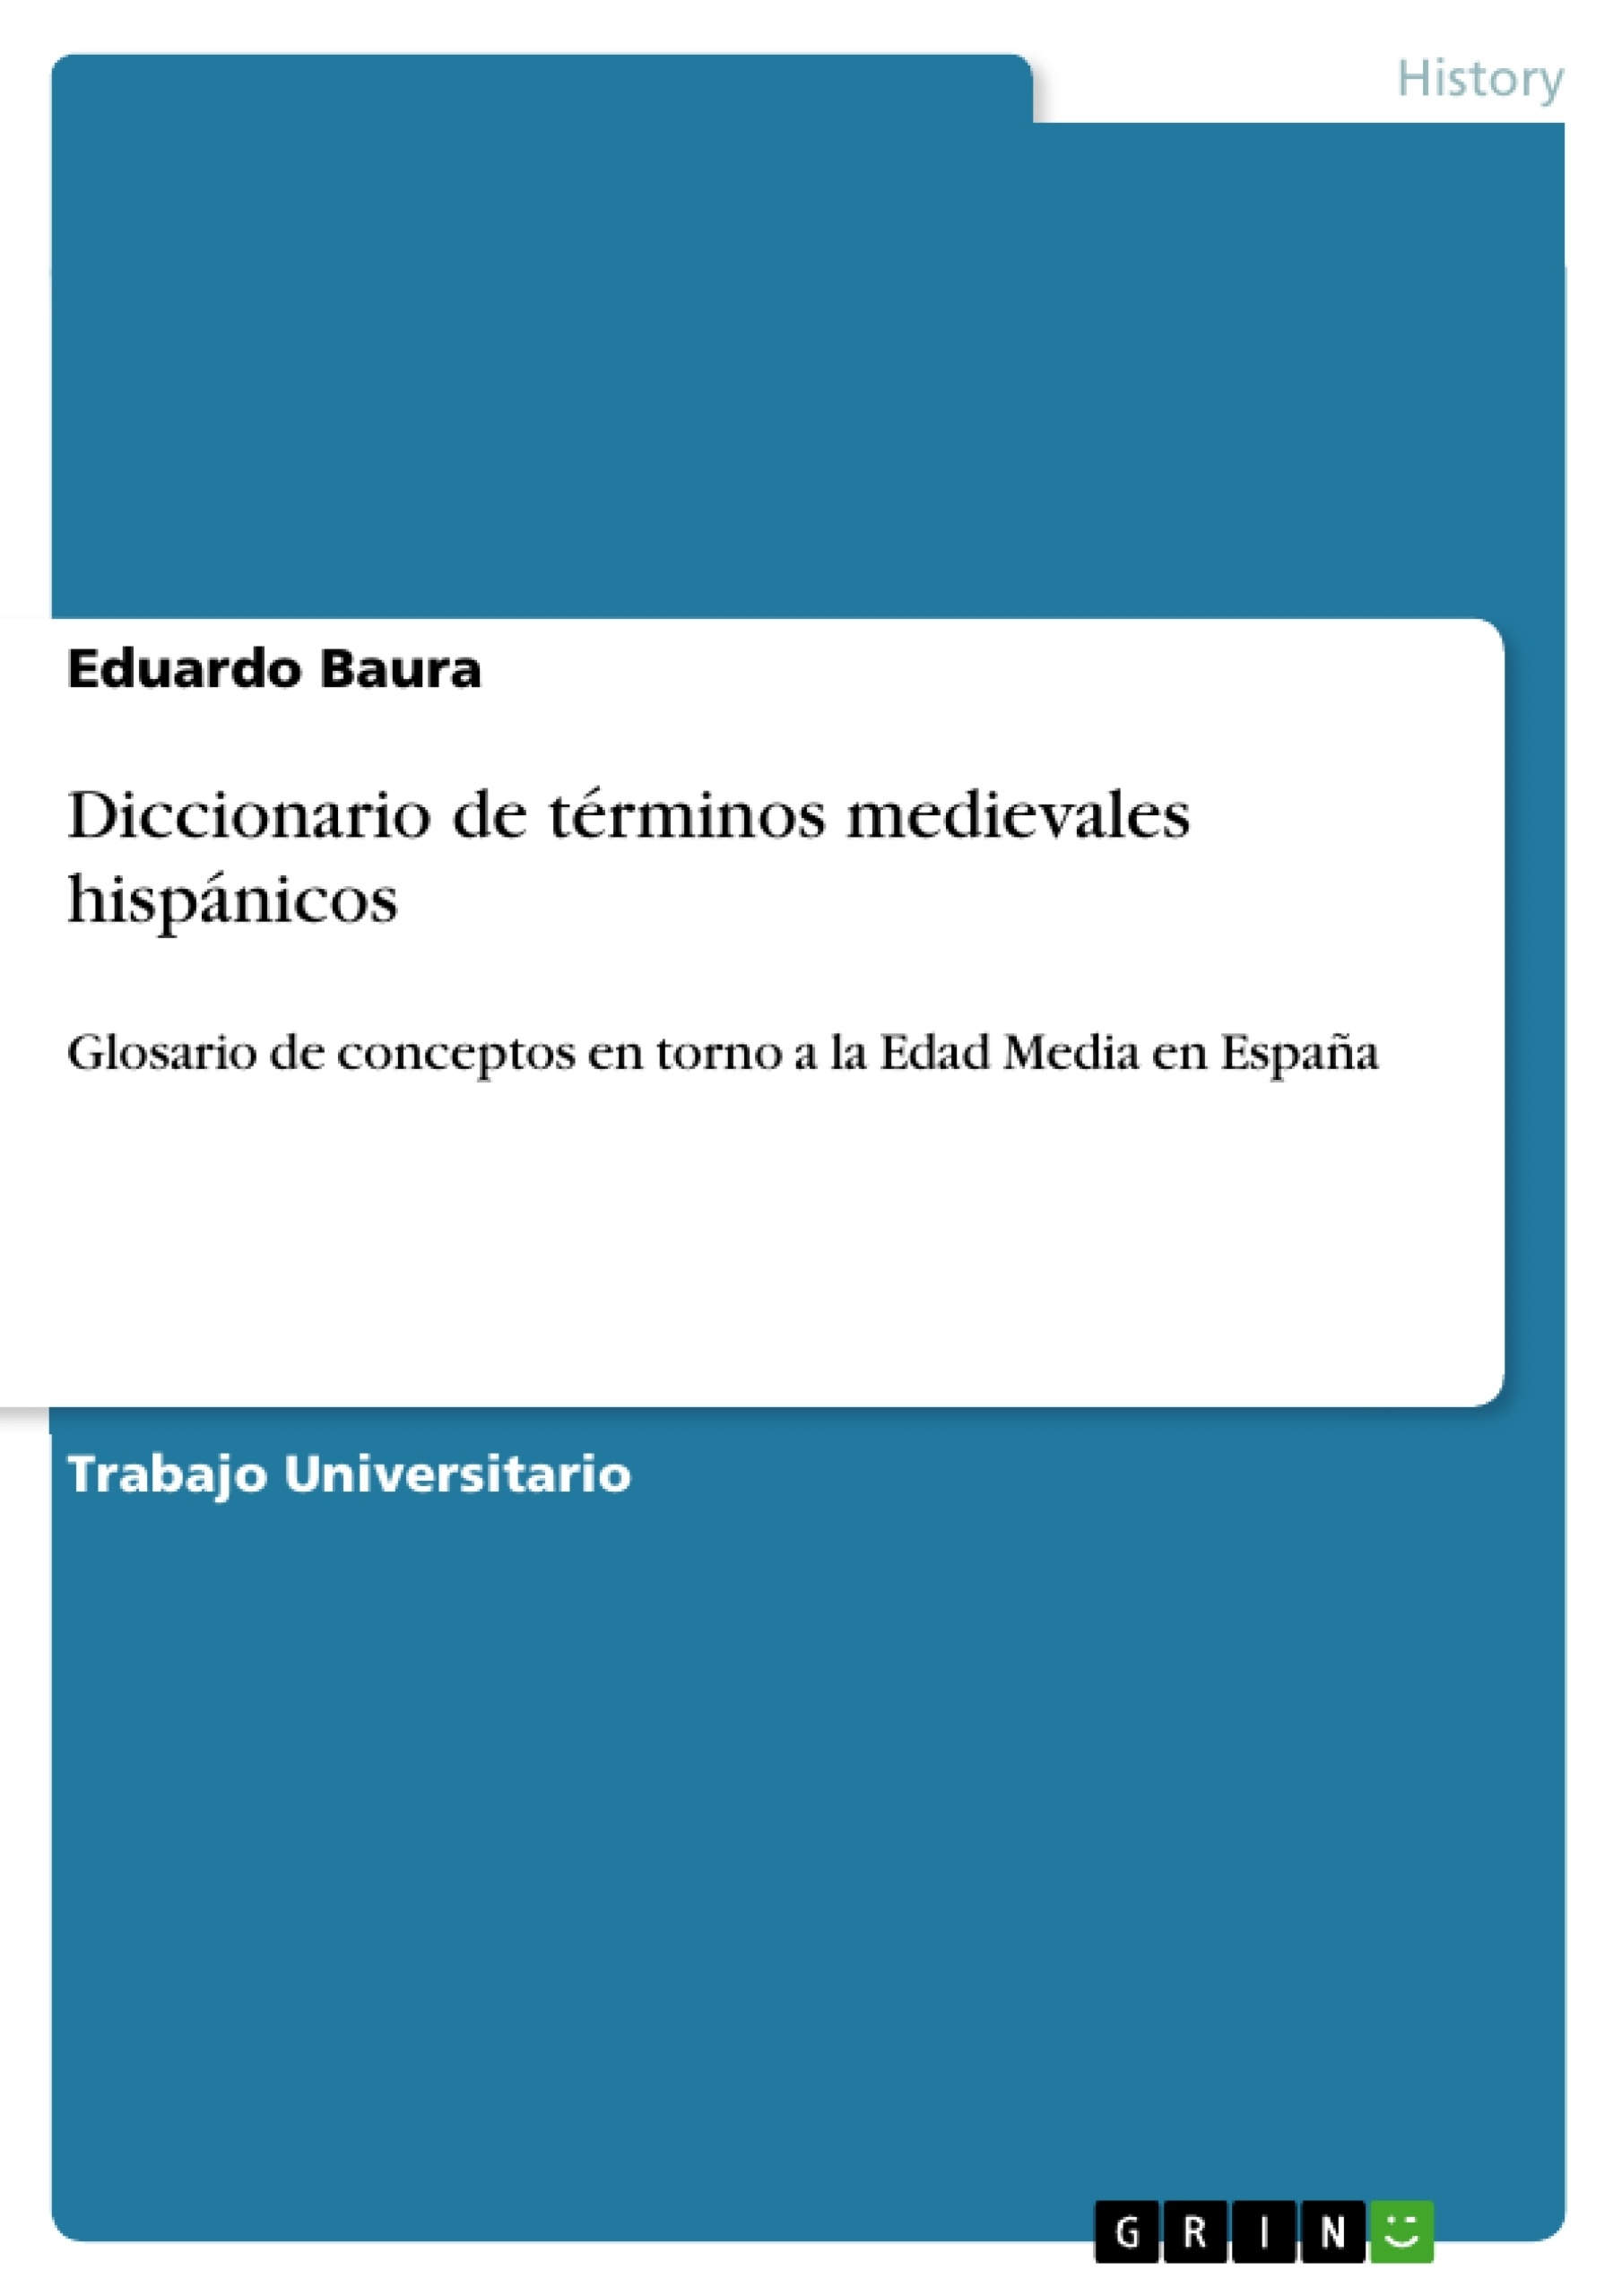 Title: Diccionario de términos medievales hispánicos